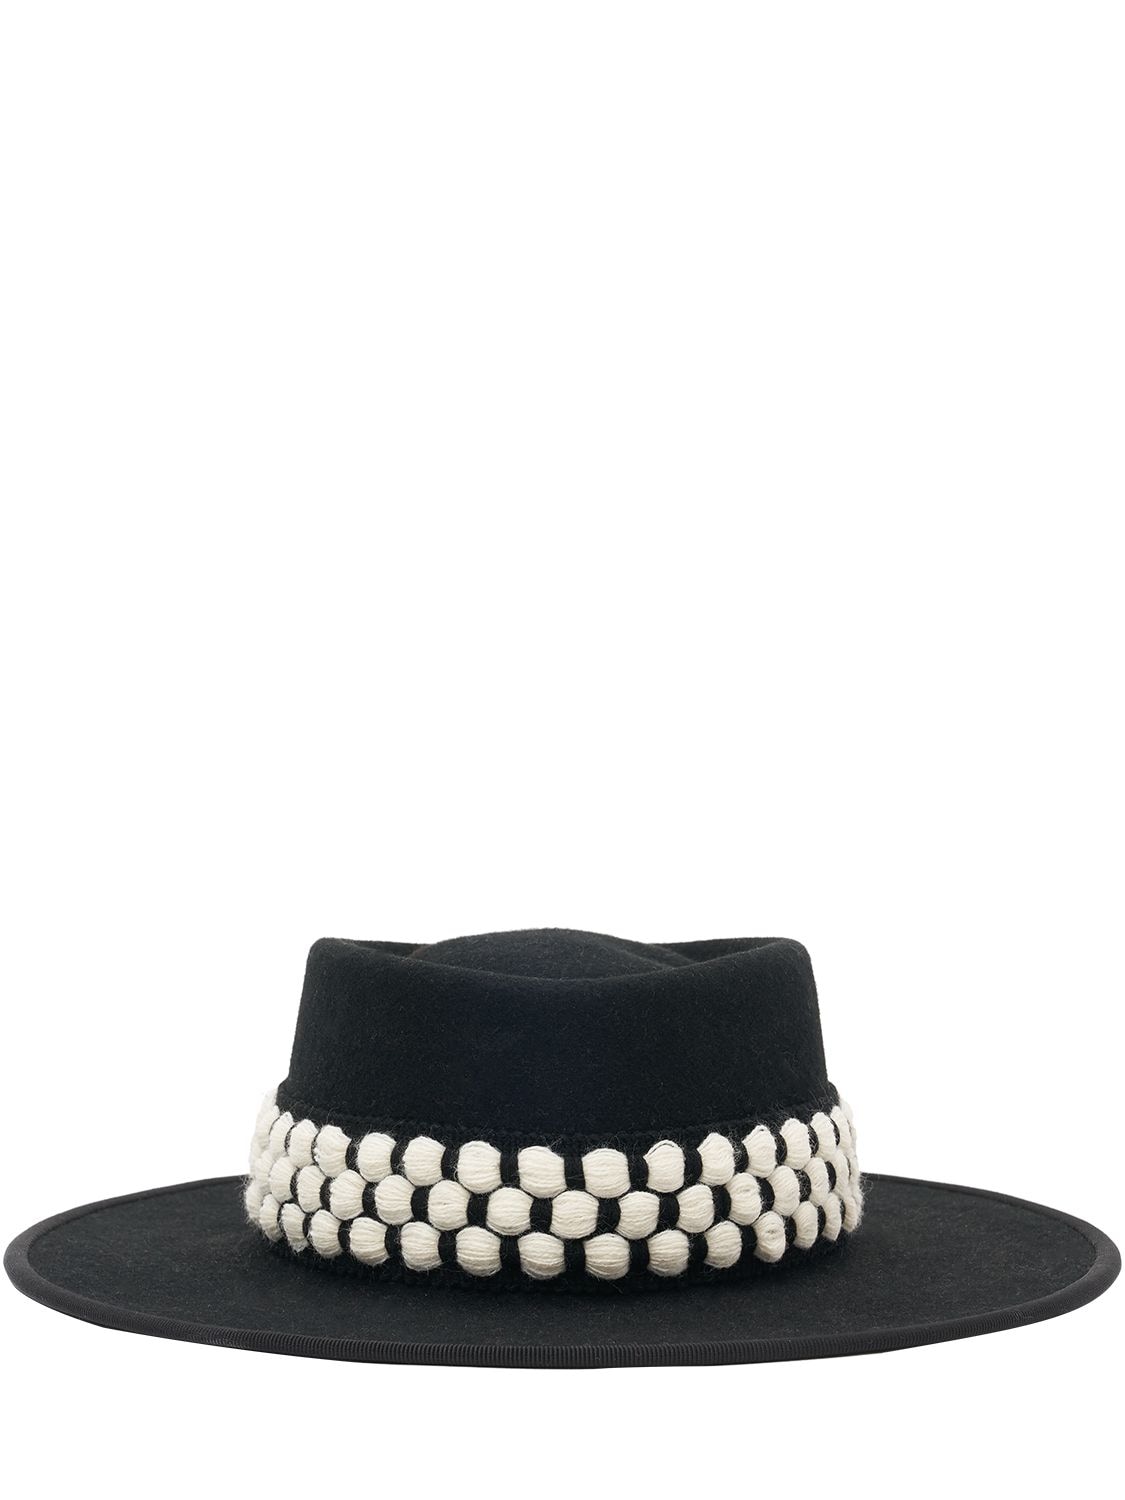 Image of Christopher Felt Brimmed Hat